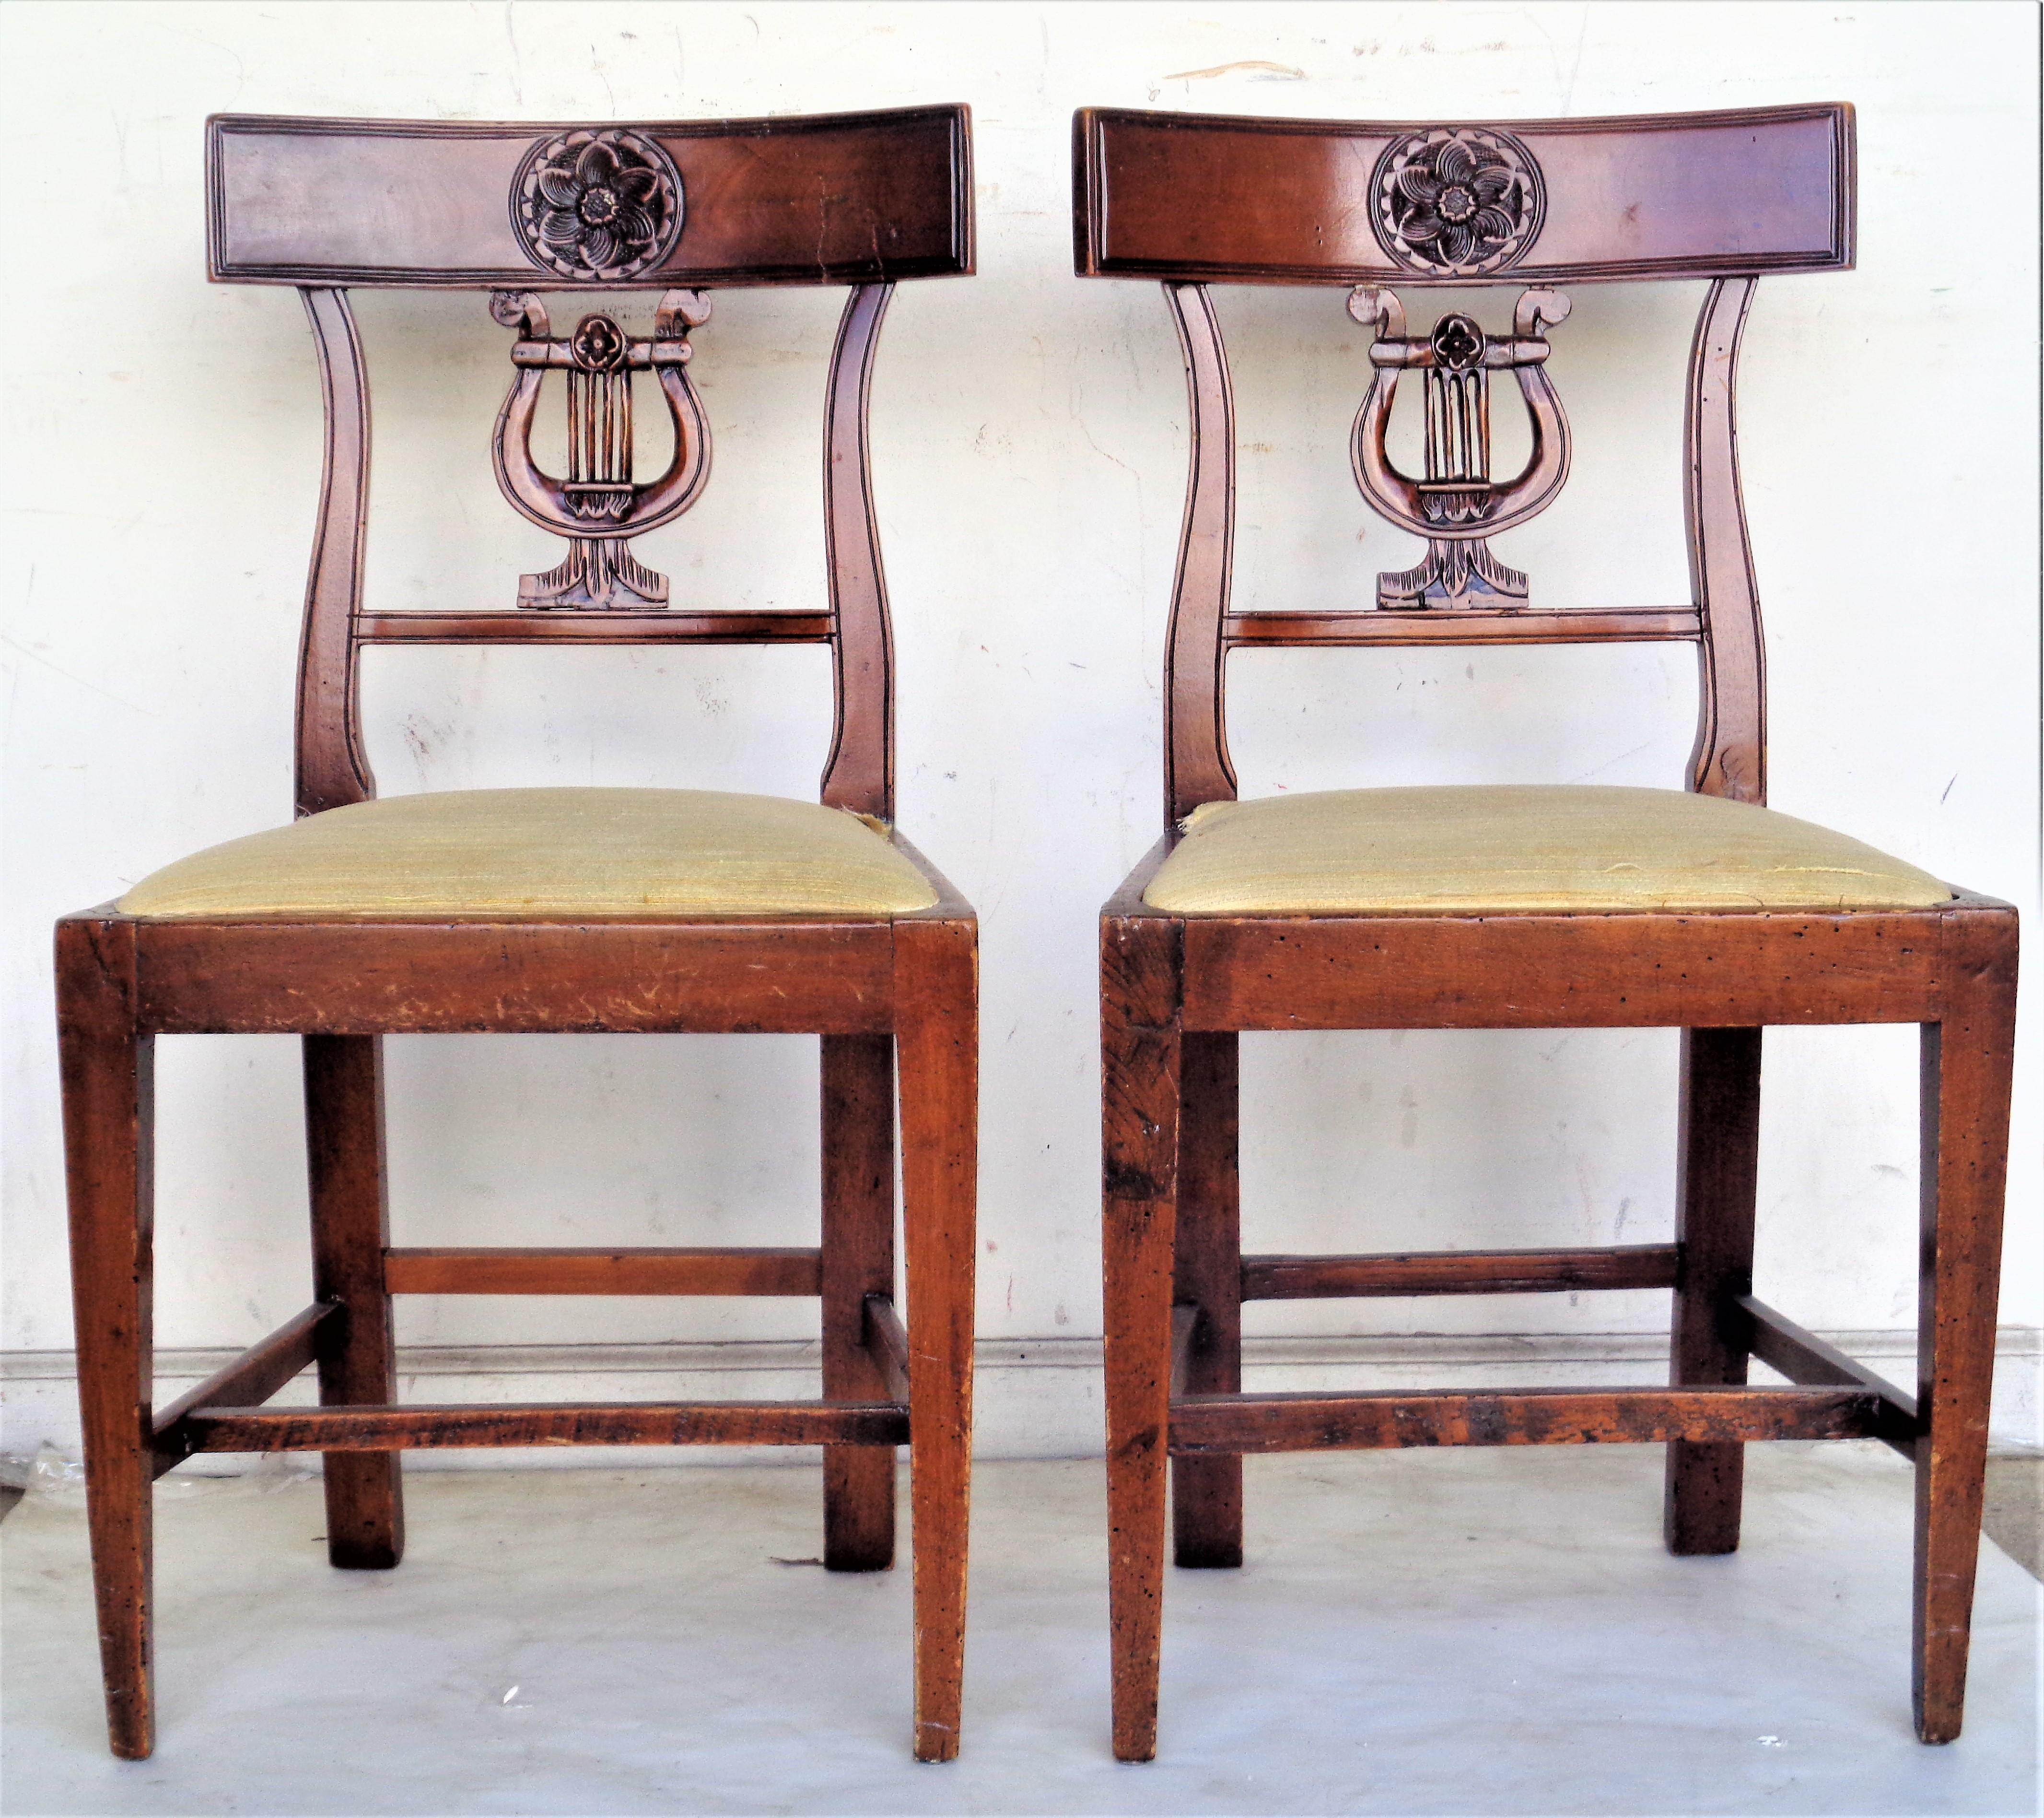 Paire d'anciennes chaises italiennes néoclassiques à dossier lyre sculpté à la main avec rosette sculptée au centre des traverses supérieures incurvées du dossier. Les deux chaises ont été construites au début de l'époque et le bois a pris une